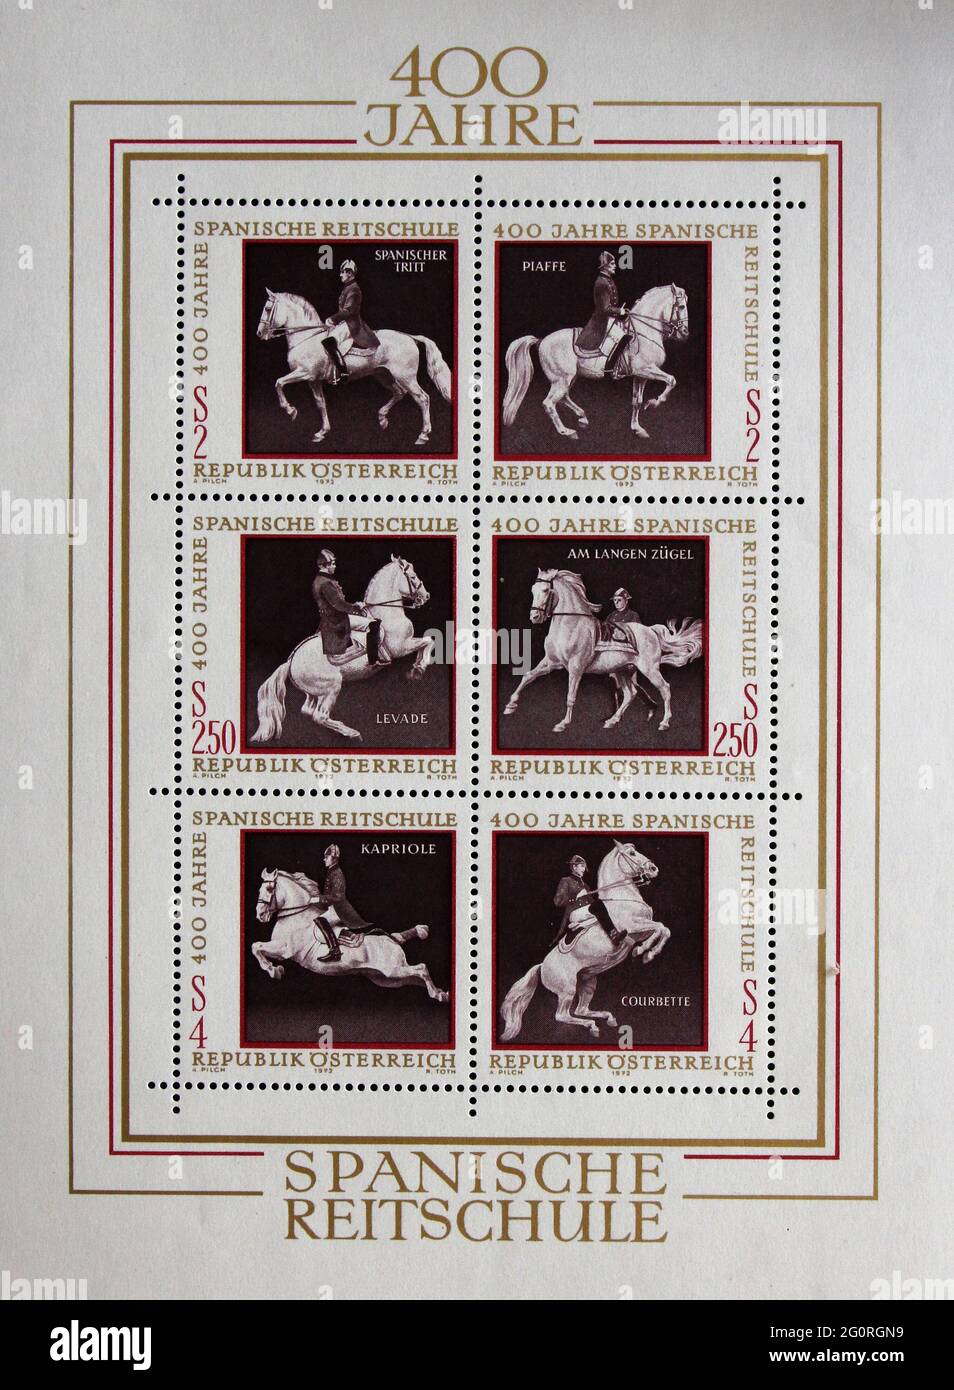 Les timbres émis en Autriche montrent l'équestrianisme et l'équitation, École espagnole d'équitation à Vienne, vers 1972. Banque D'Images